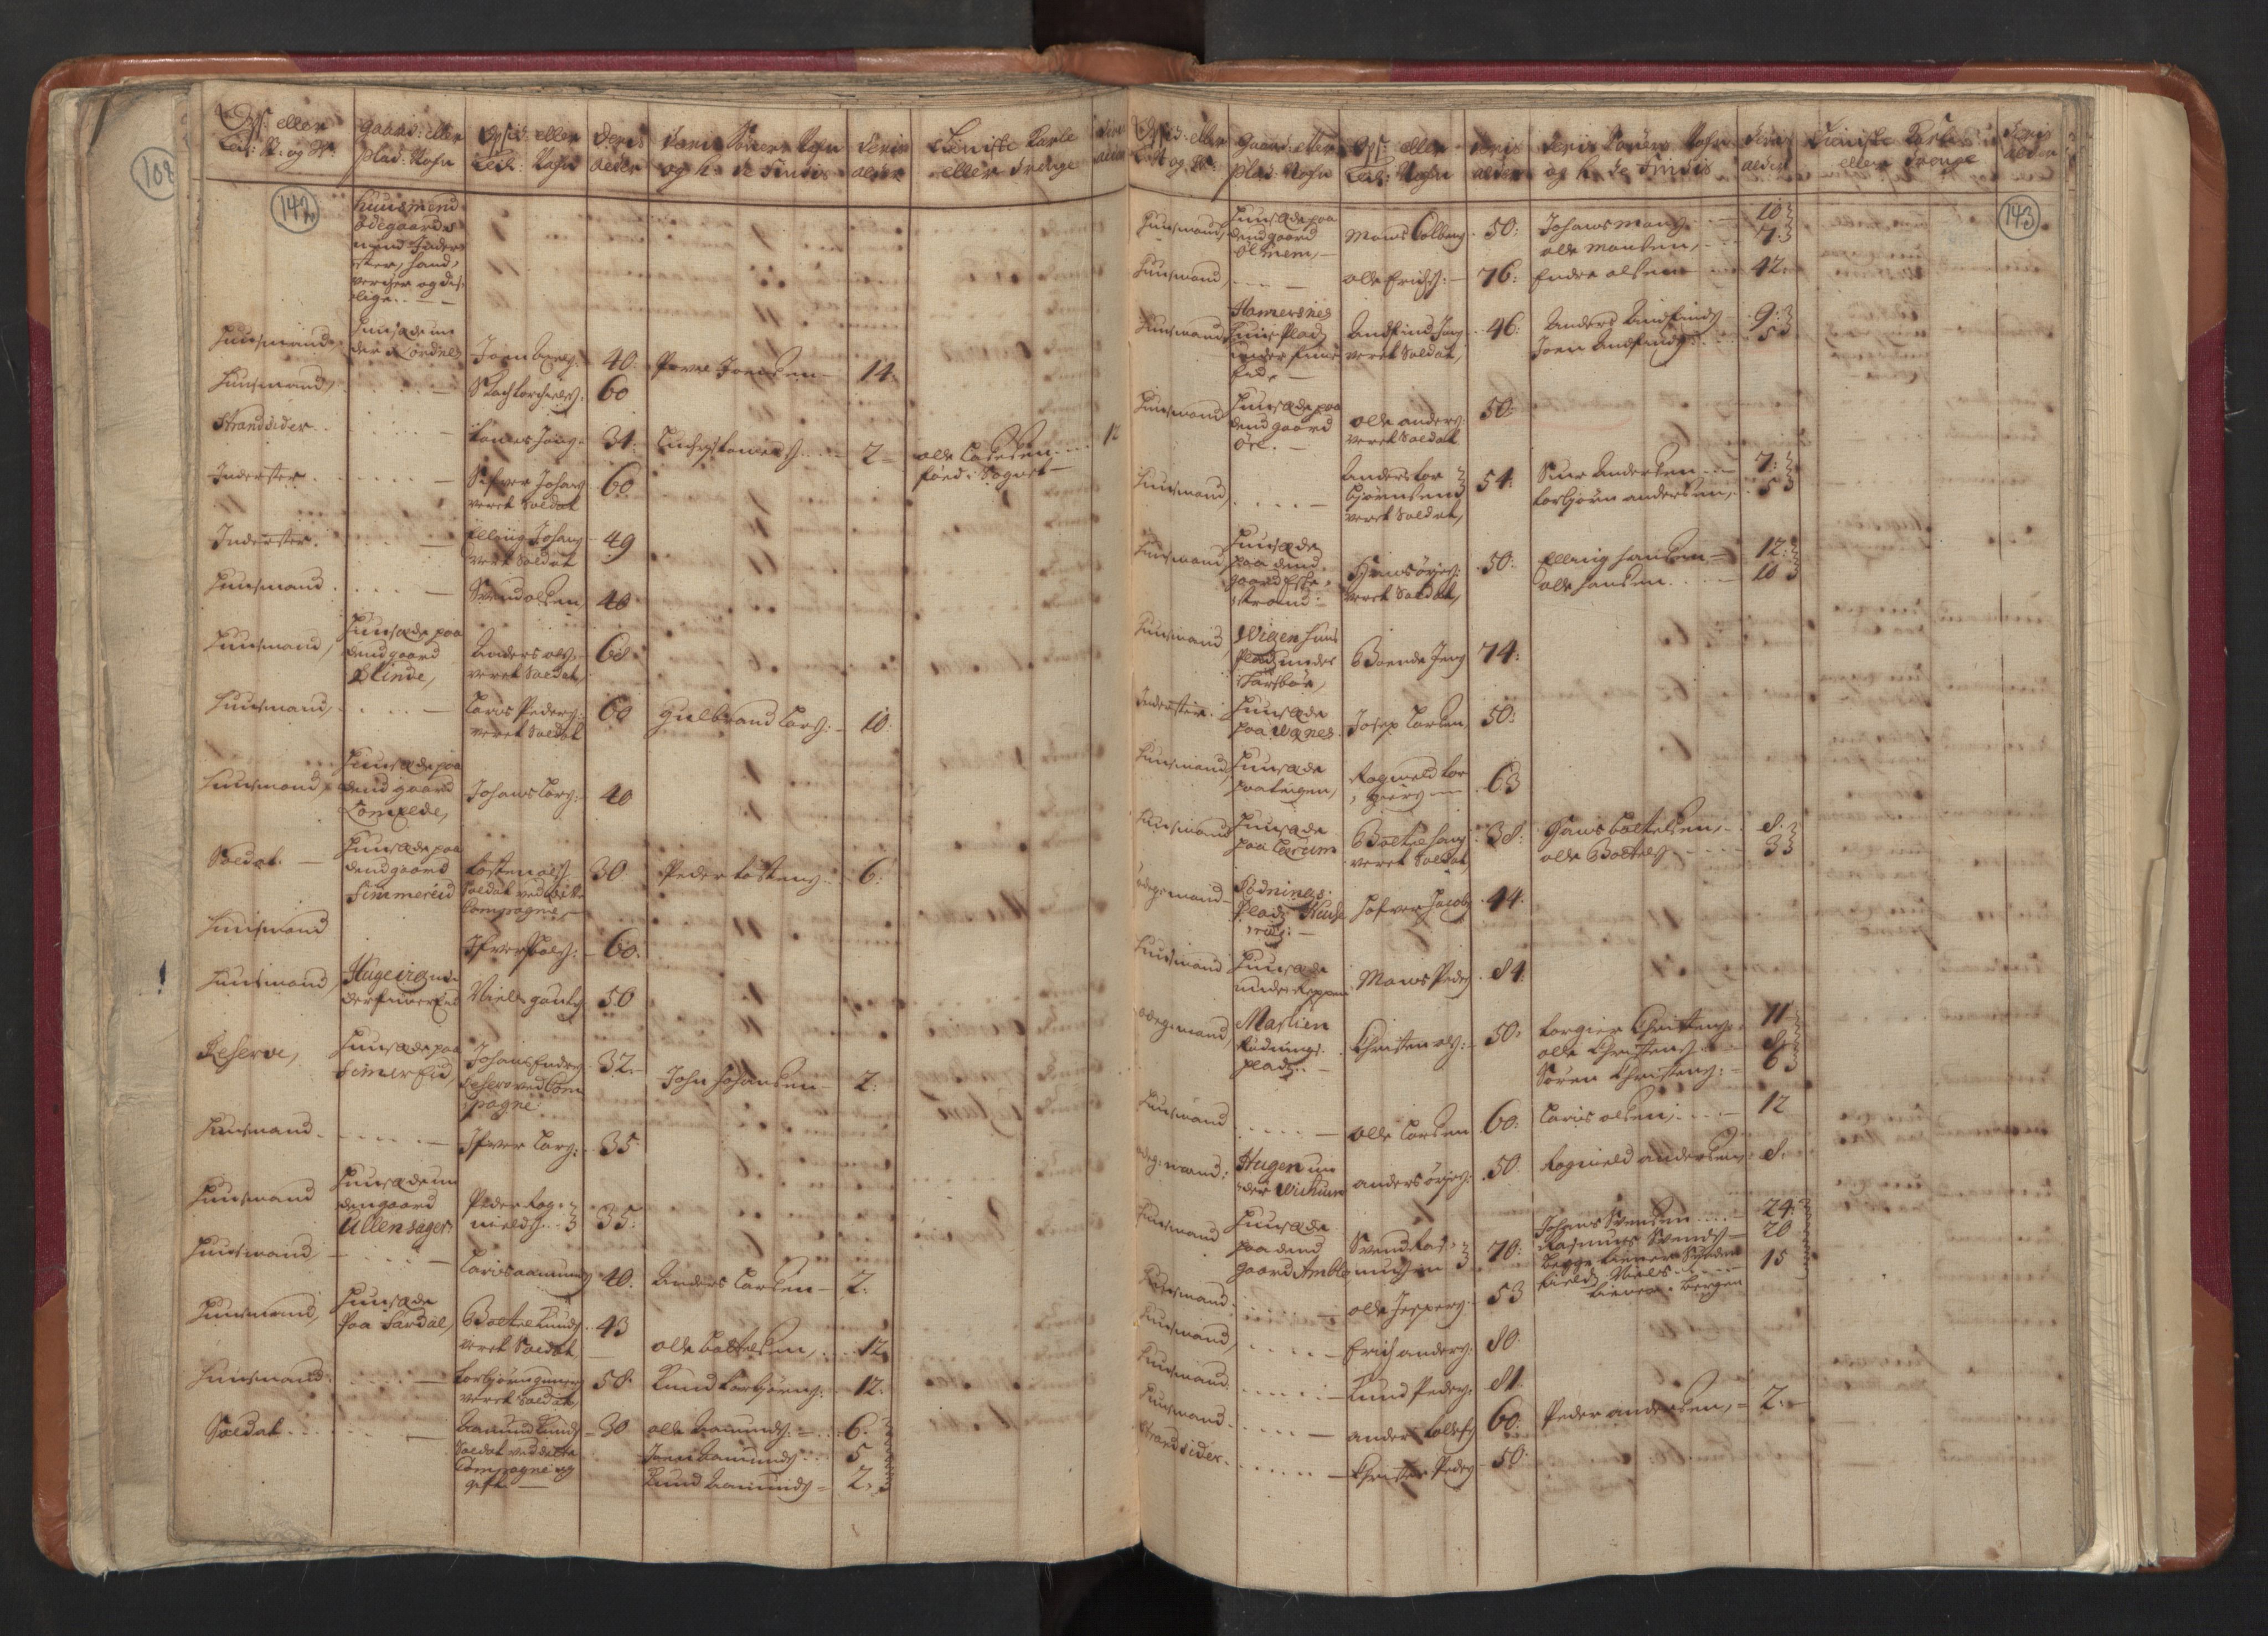 RA, Manntallet 1701, nr. 8: Ytre Sogn fogderi og Indre Sogn fogderi, 1701, s. 142-143